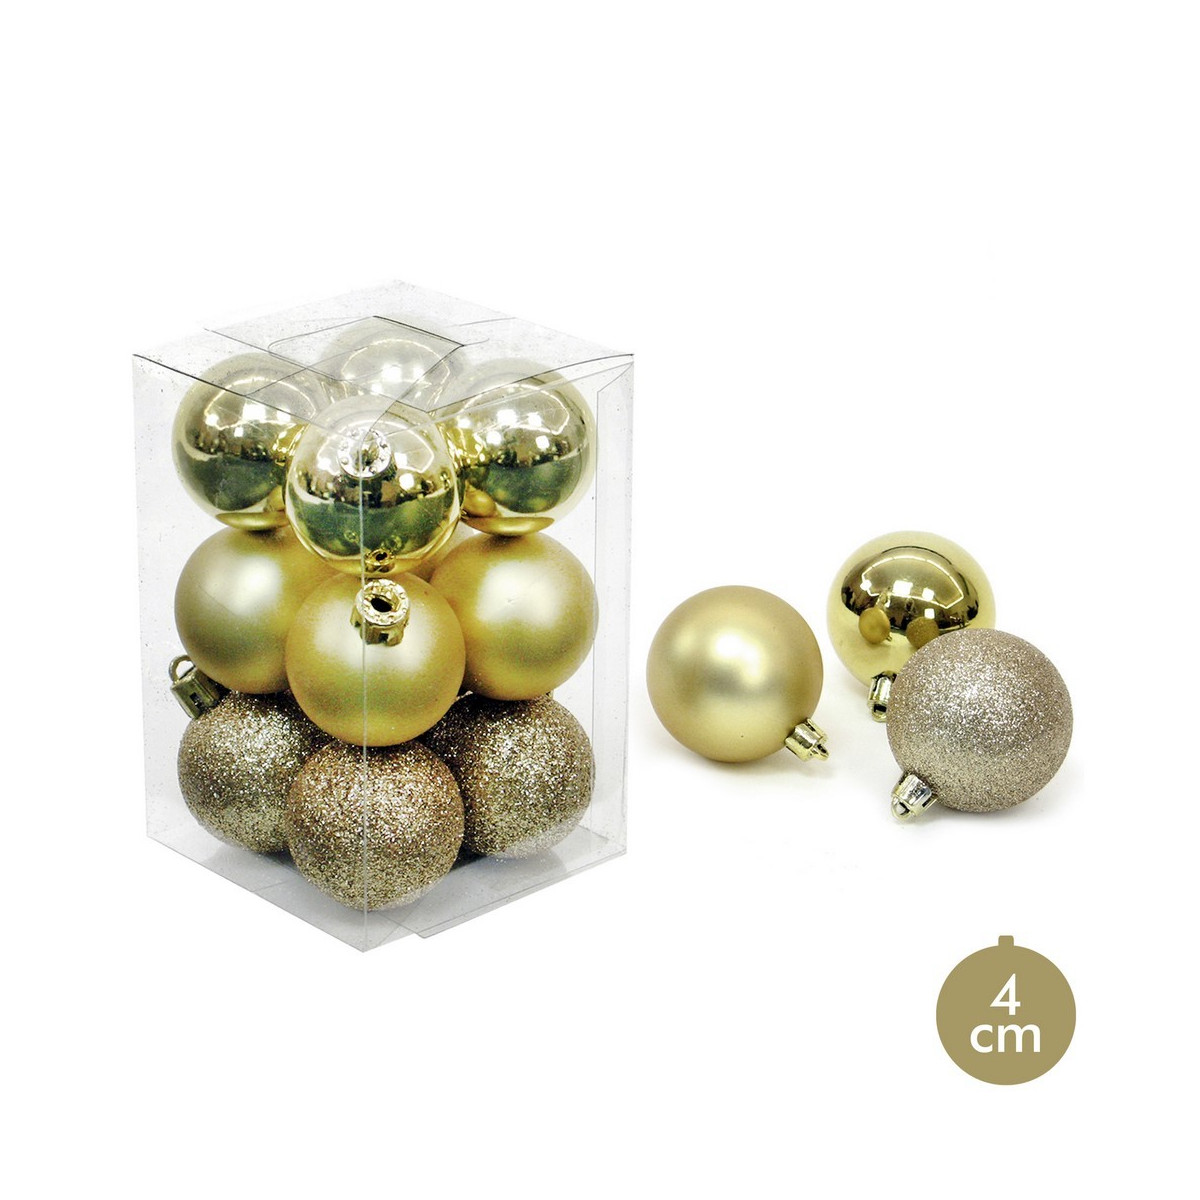 S 12 bola oro decoración navidad 4 x 4 x 4 cm